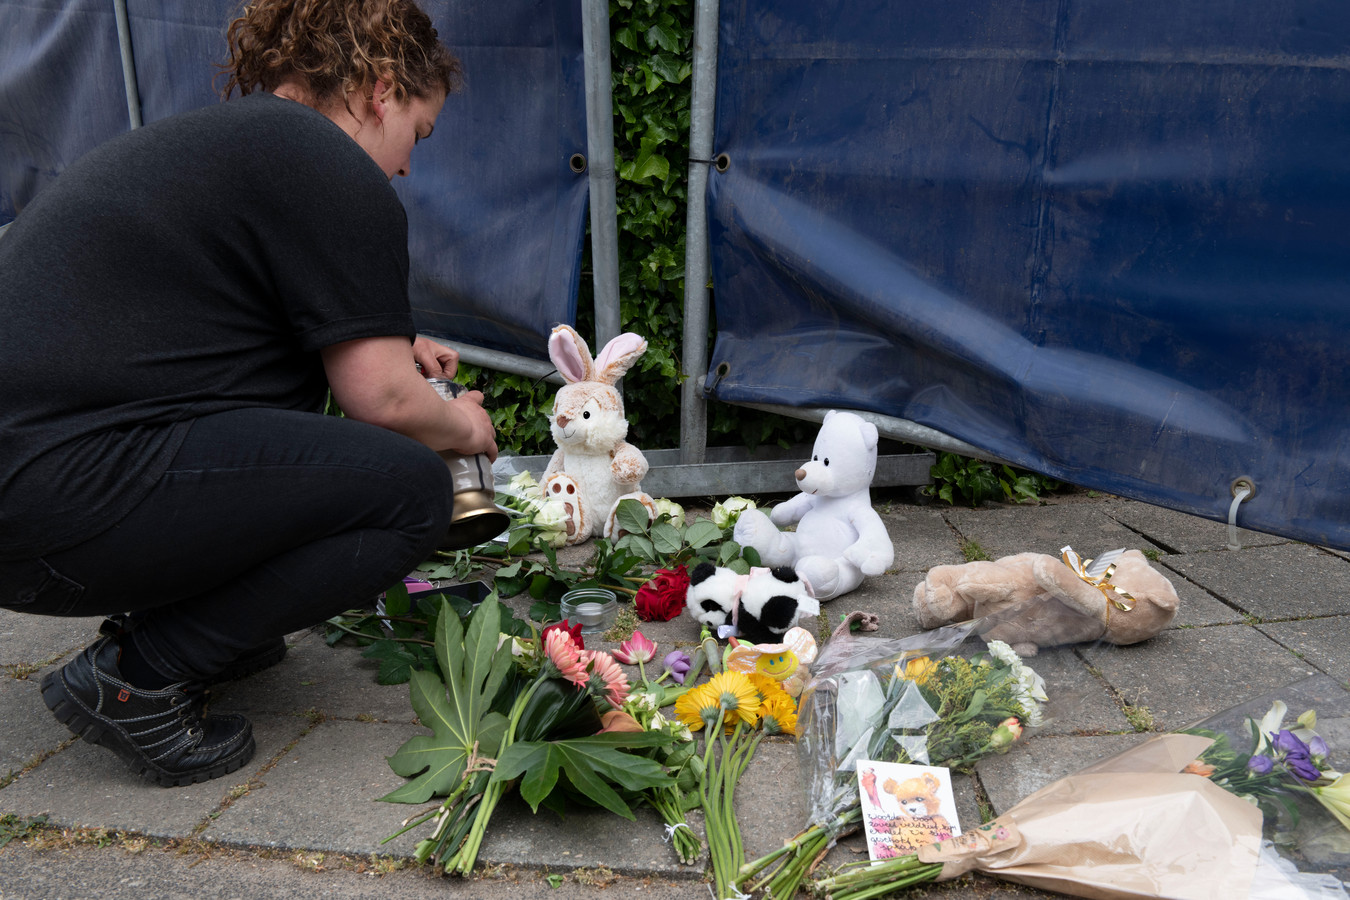 Aan de Emmalaan worden bloemen, knuffels en kaarsen gebracht, ter herinnering aan de slachtoffers.